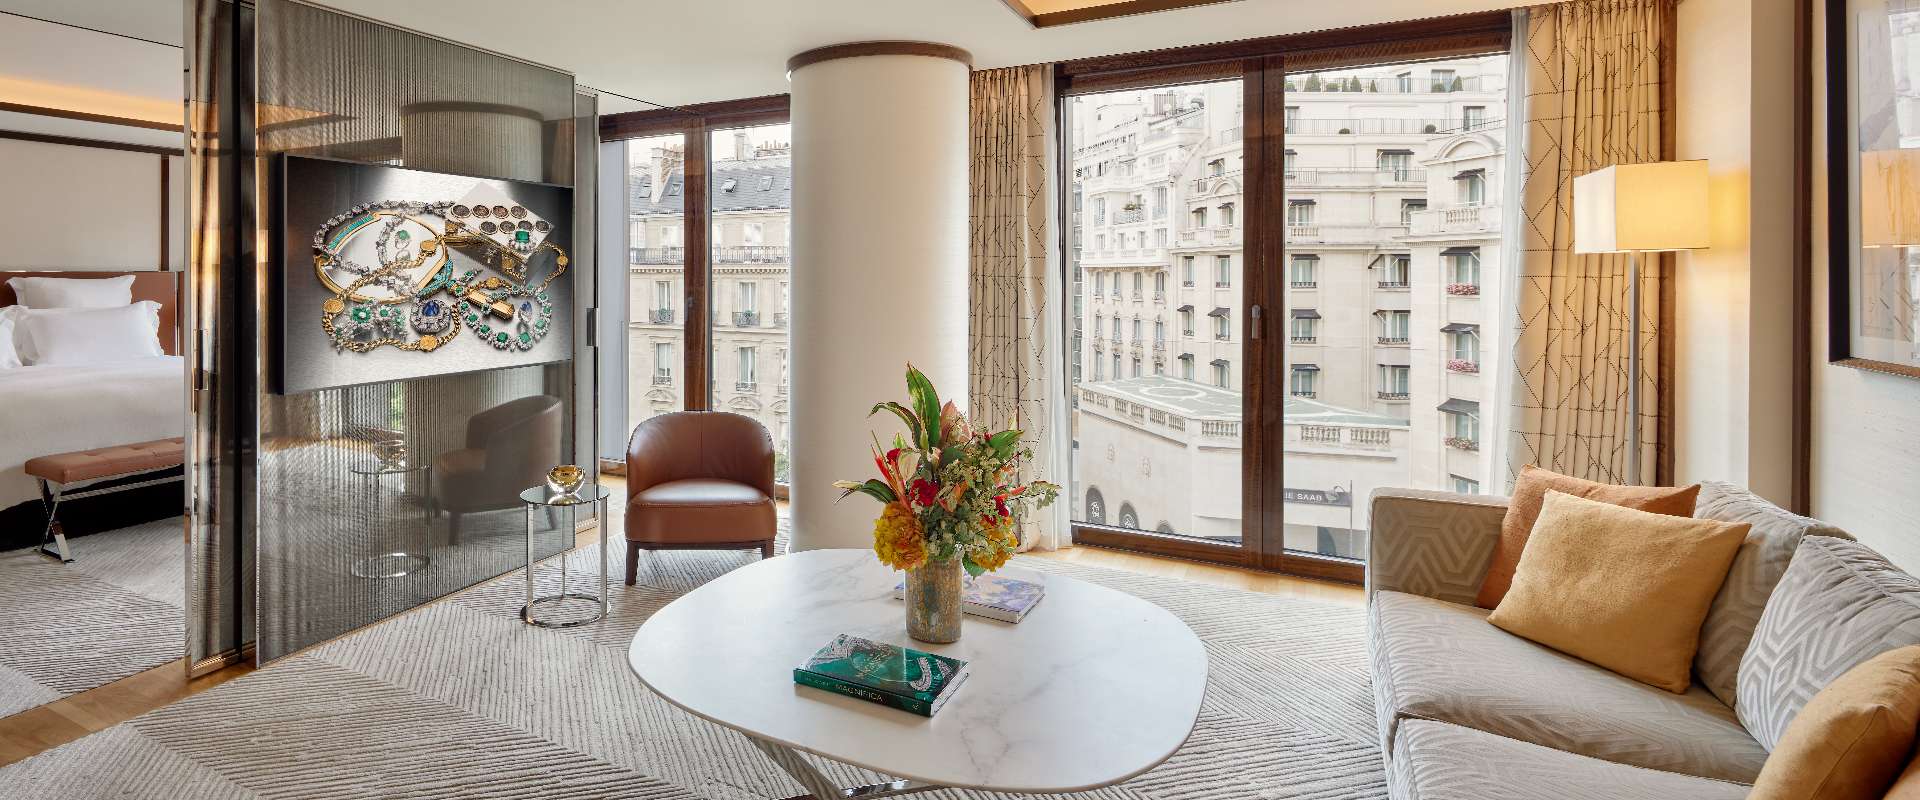 Bulgari Hotel Paris - Deluxe Suite Living Room